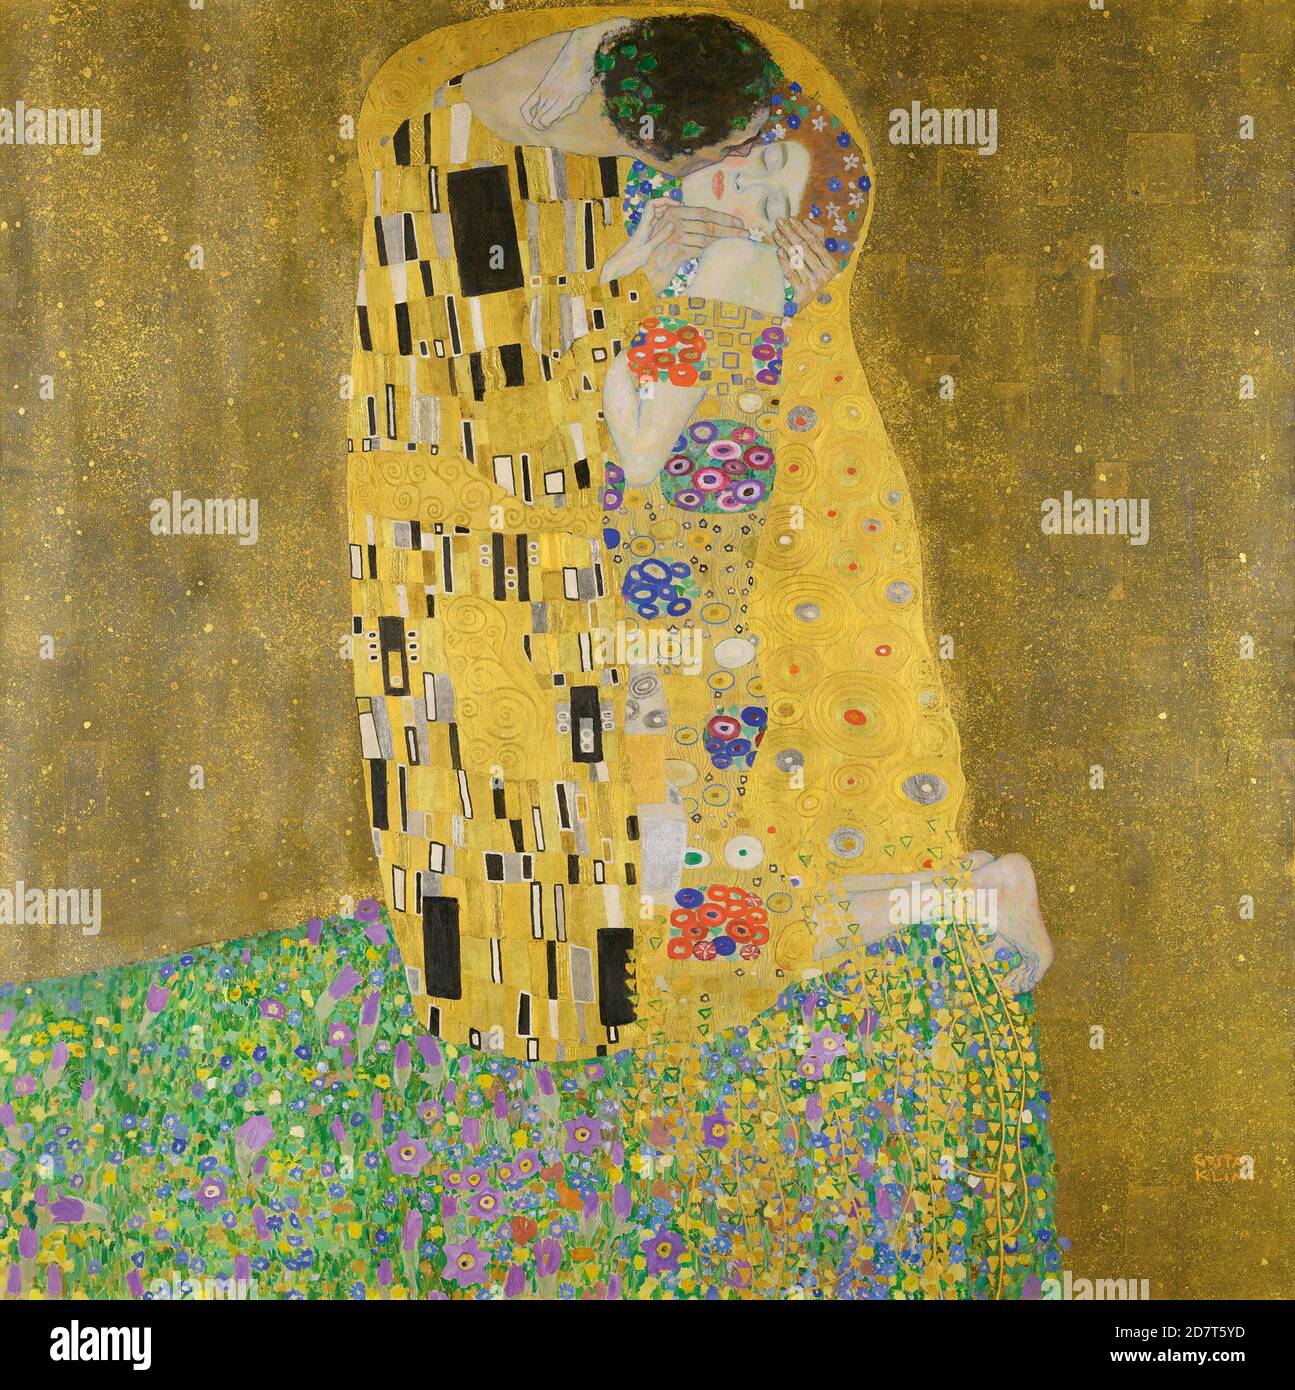 Titolo: Il bacio Creatore: Gustav Klimt Data: 1907 Medium: Olio su tela dimensioni: 180 x 180 cms Località: Osterreichische Galerie Belvedere, Vienna Foto Stock